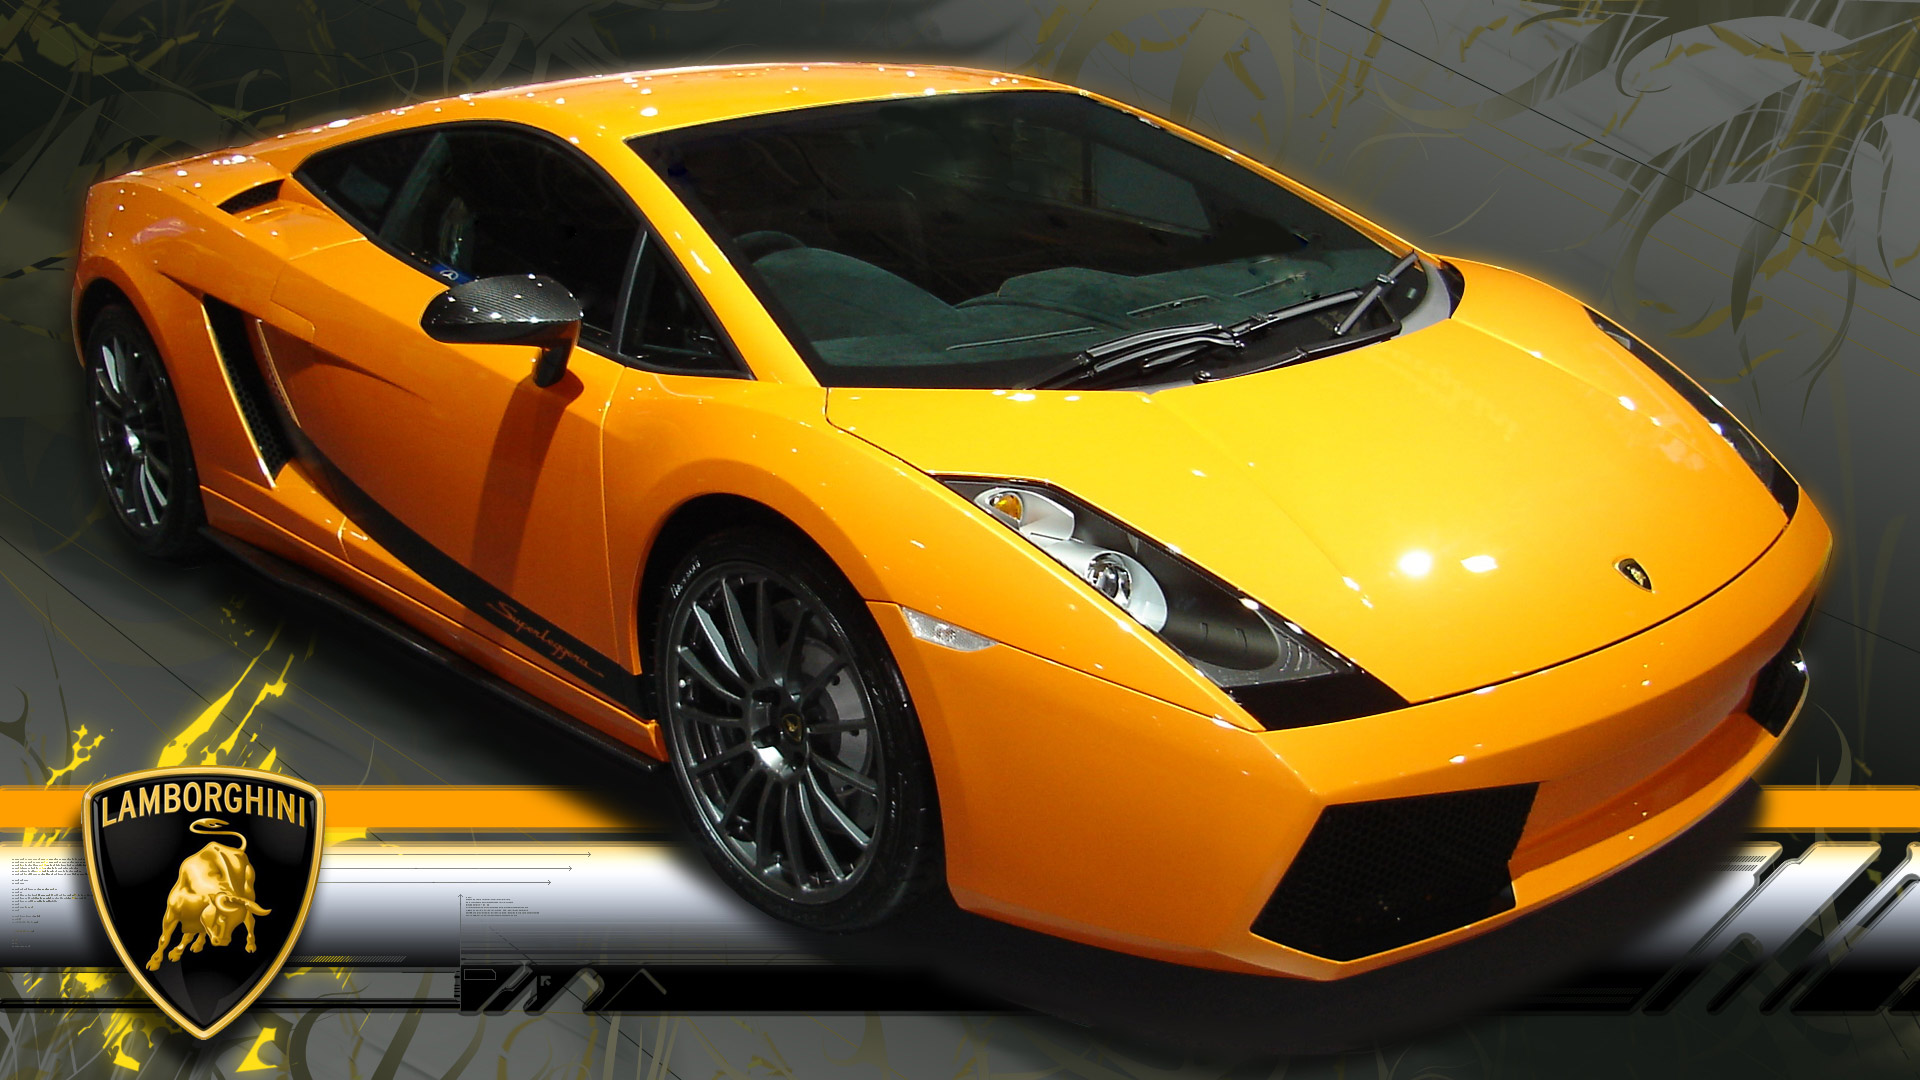 Download Lamborghini Wallpapers In Hd For Desktop And - Lamborghini Cars Wallpapers Download - HD Wallpaper 